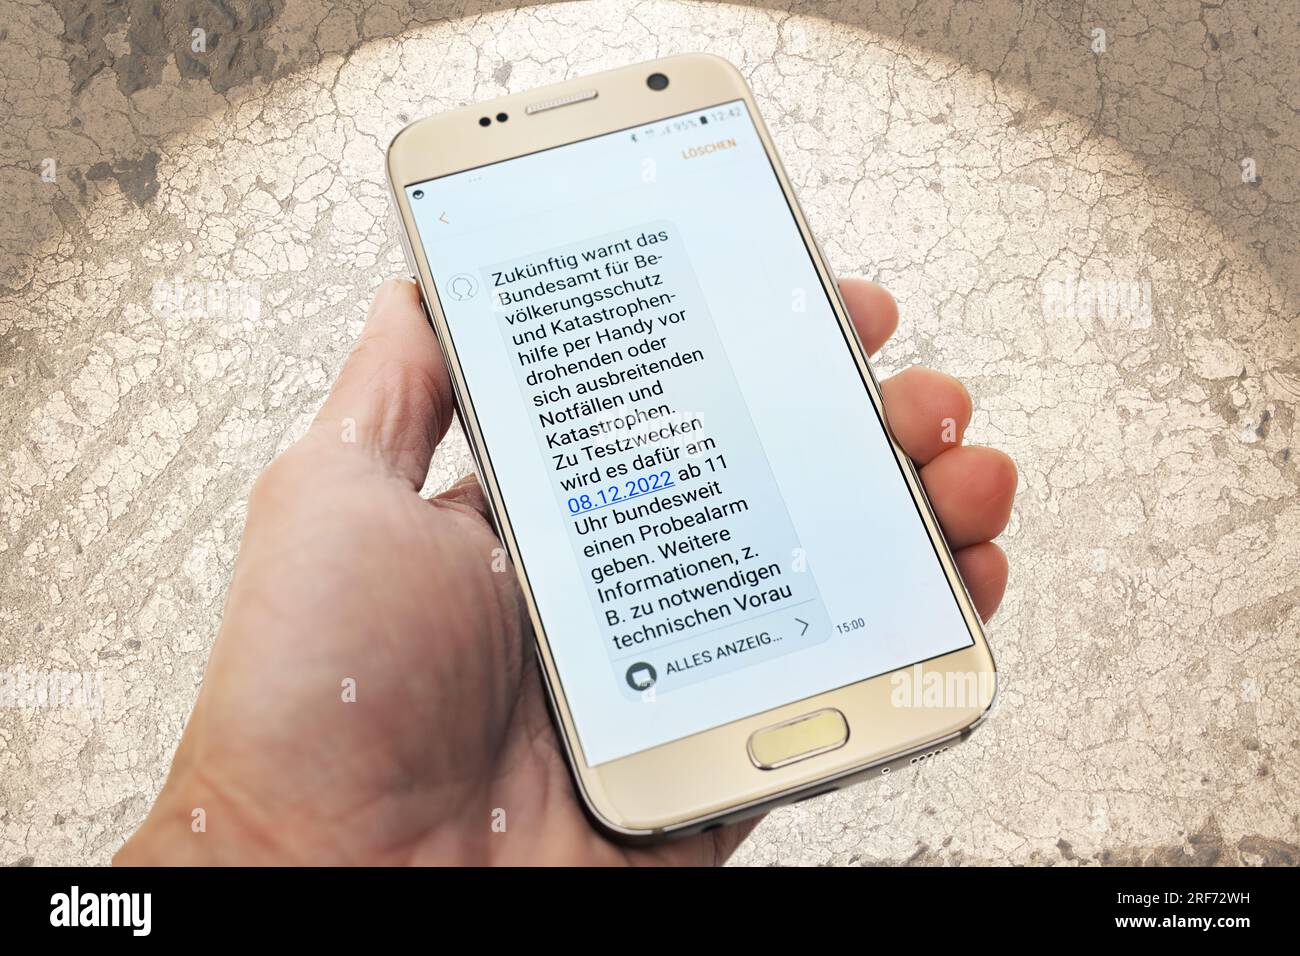 Smartphone mit SMS-Benachrichtigung über den Katastrophenwarntag Foto Stock